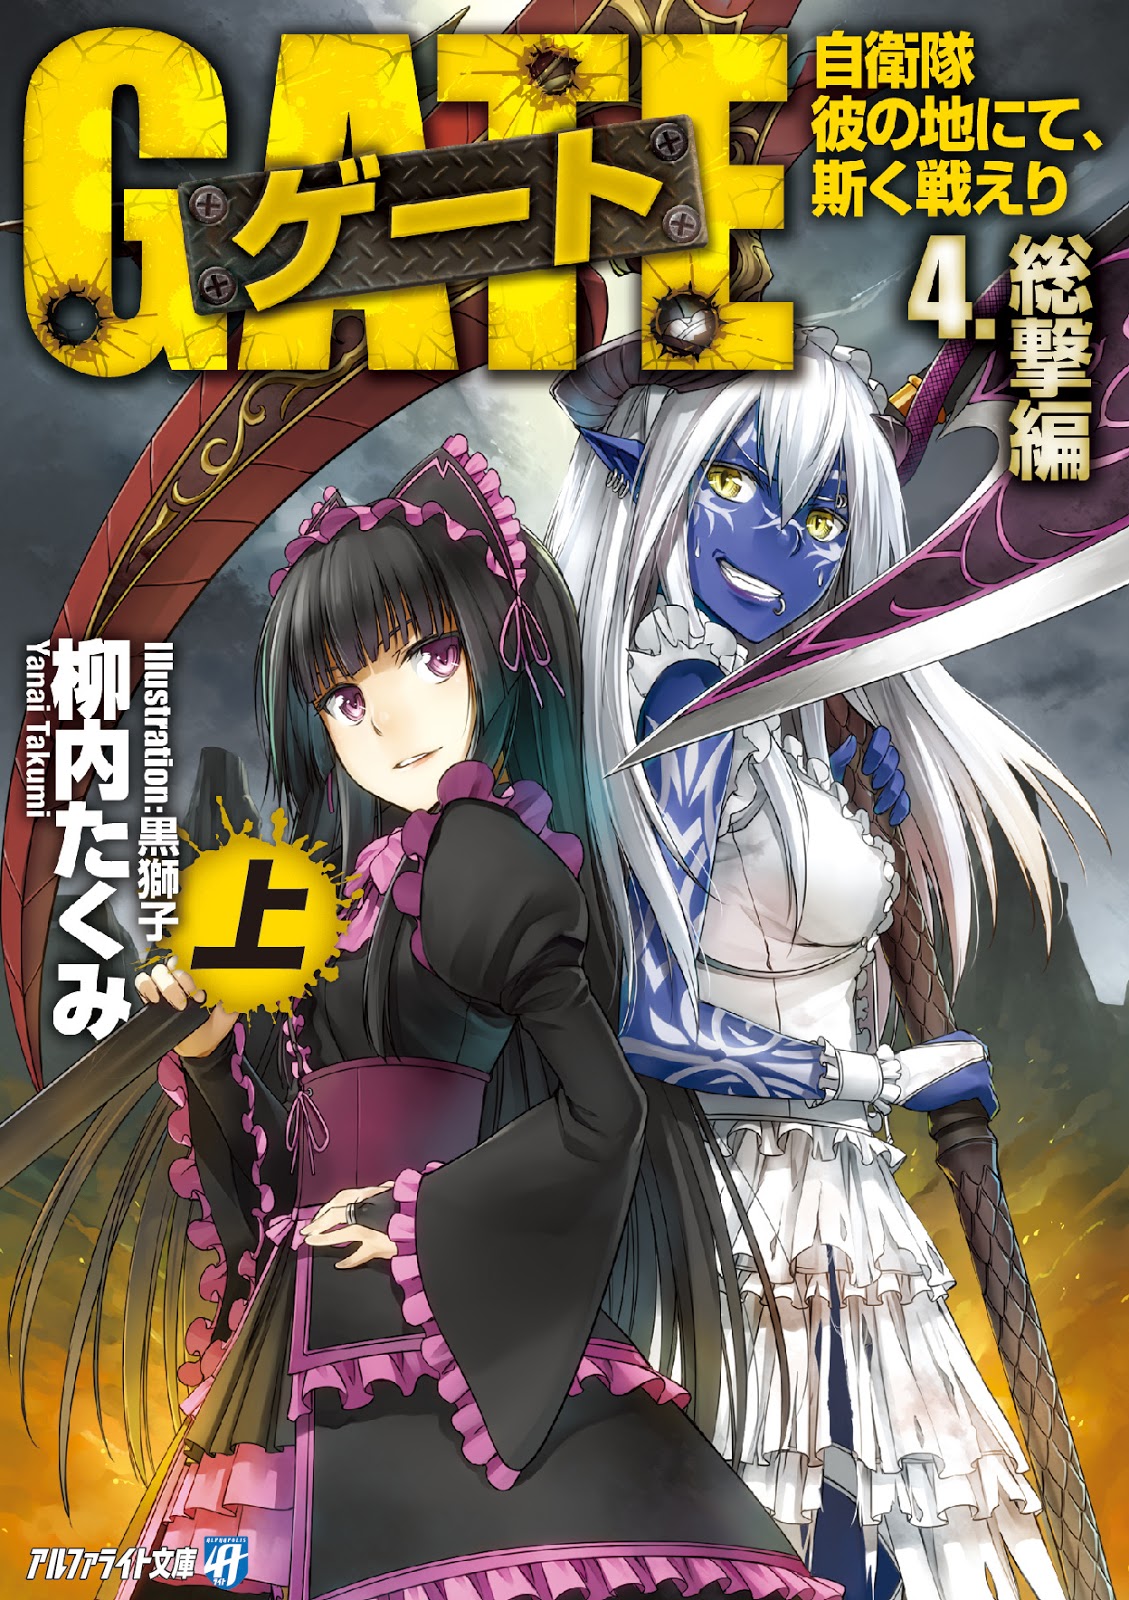 Gate - Thus the JSDF Fought There  Novel vs Light Novel vs Manga vs Anime  Art : r/gate